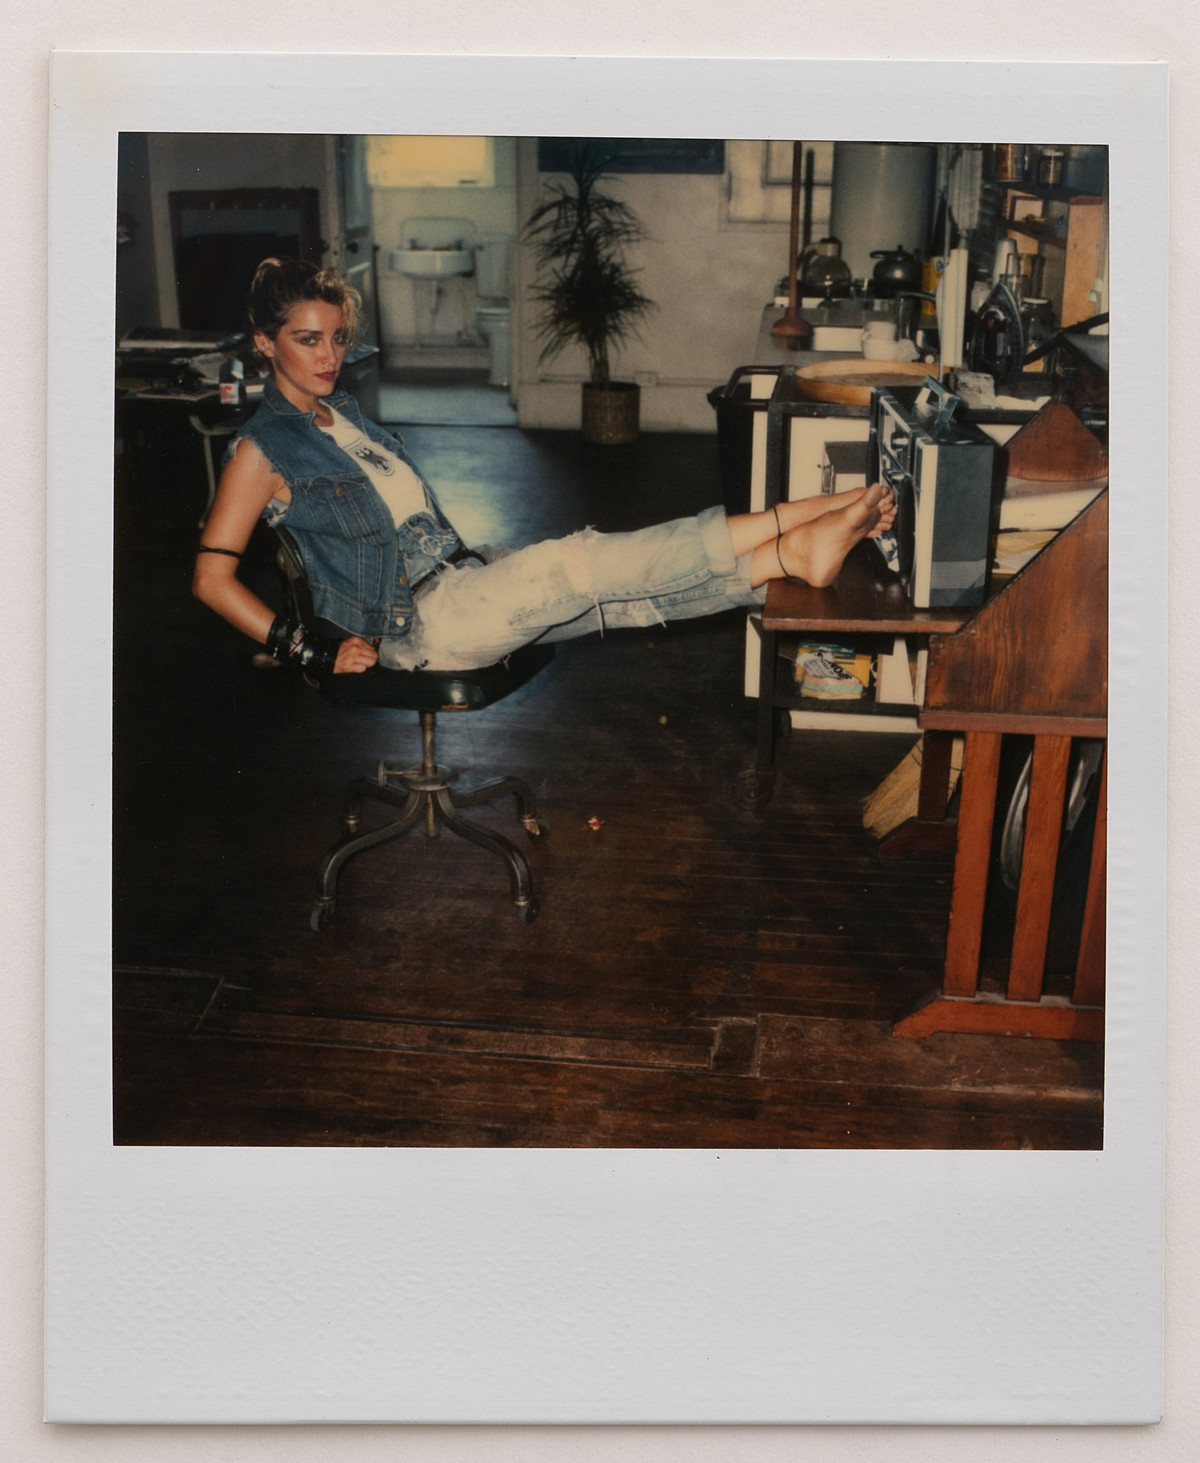 Мадонна на пороге славы в полароидных фотографиях 1983 года Ричарда Кормана 18